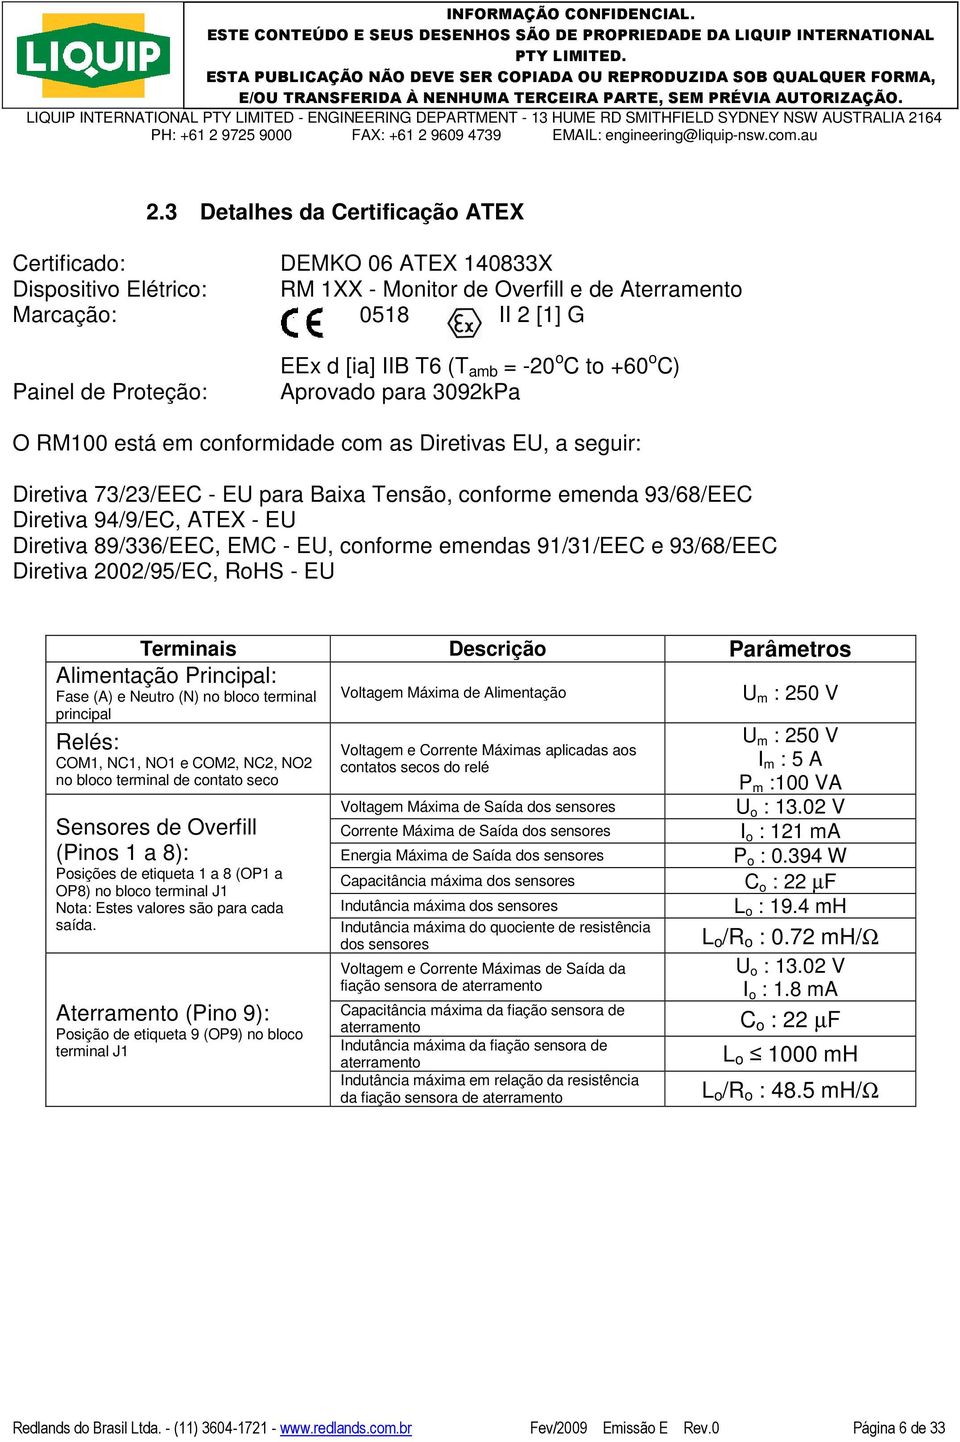 94/9/EC, ATEX - EU Diretiva 89/336/EEC, EMC - EU, conforme emendas 91/31/EEC e 93/68/EEC Diretiva 2002/95/EC, RoHS - EU Terminais Descrição Parâmetros Alimentação Principal: Fase (A) e Neutro (N) no